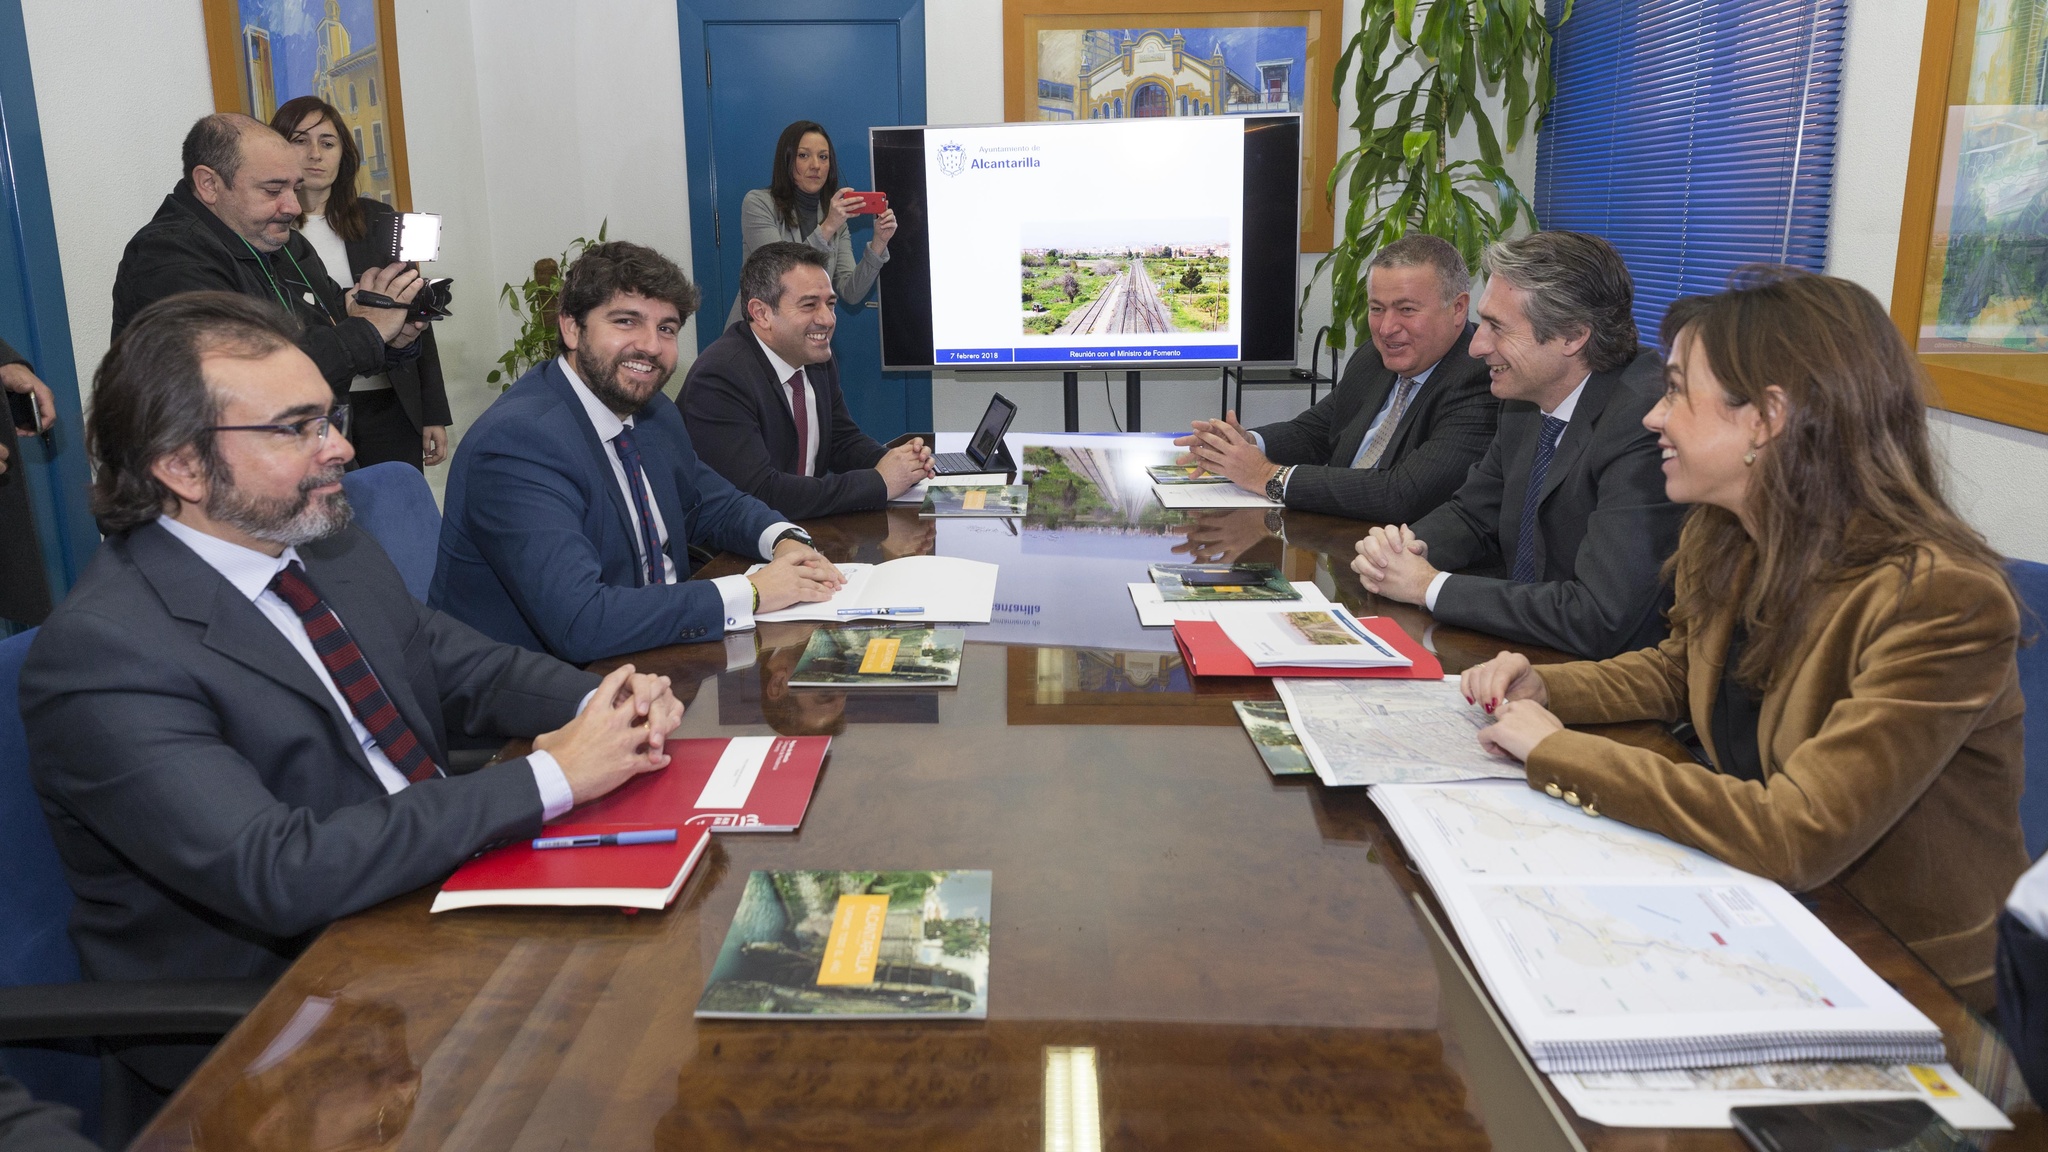 El presidente de la Comunidad, junto con el ministro de Fomento, se reúne con el alcalde de Alcantarilla